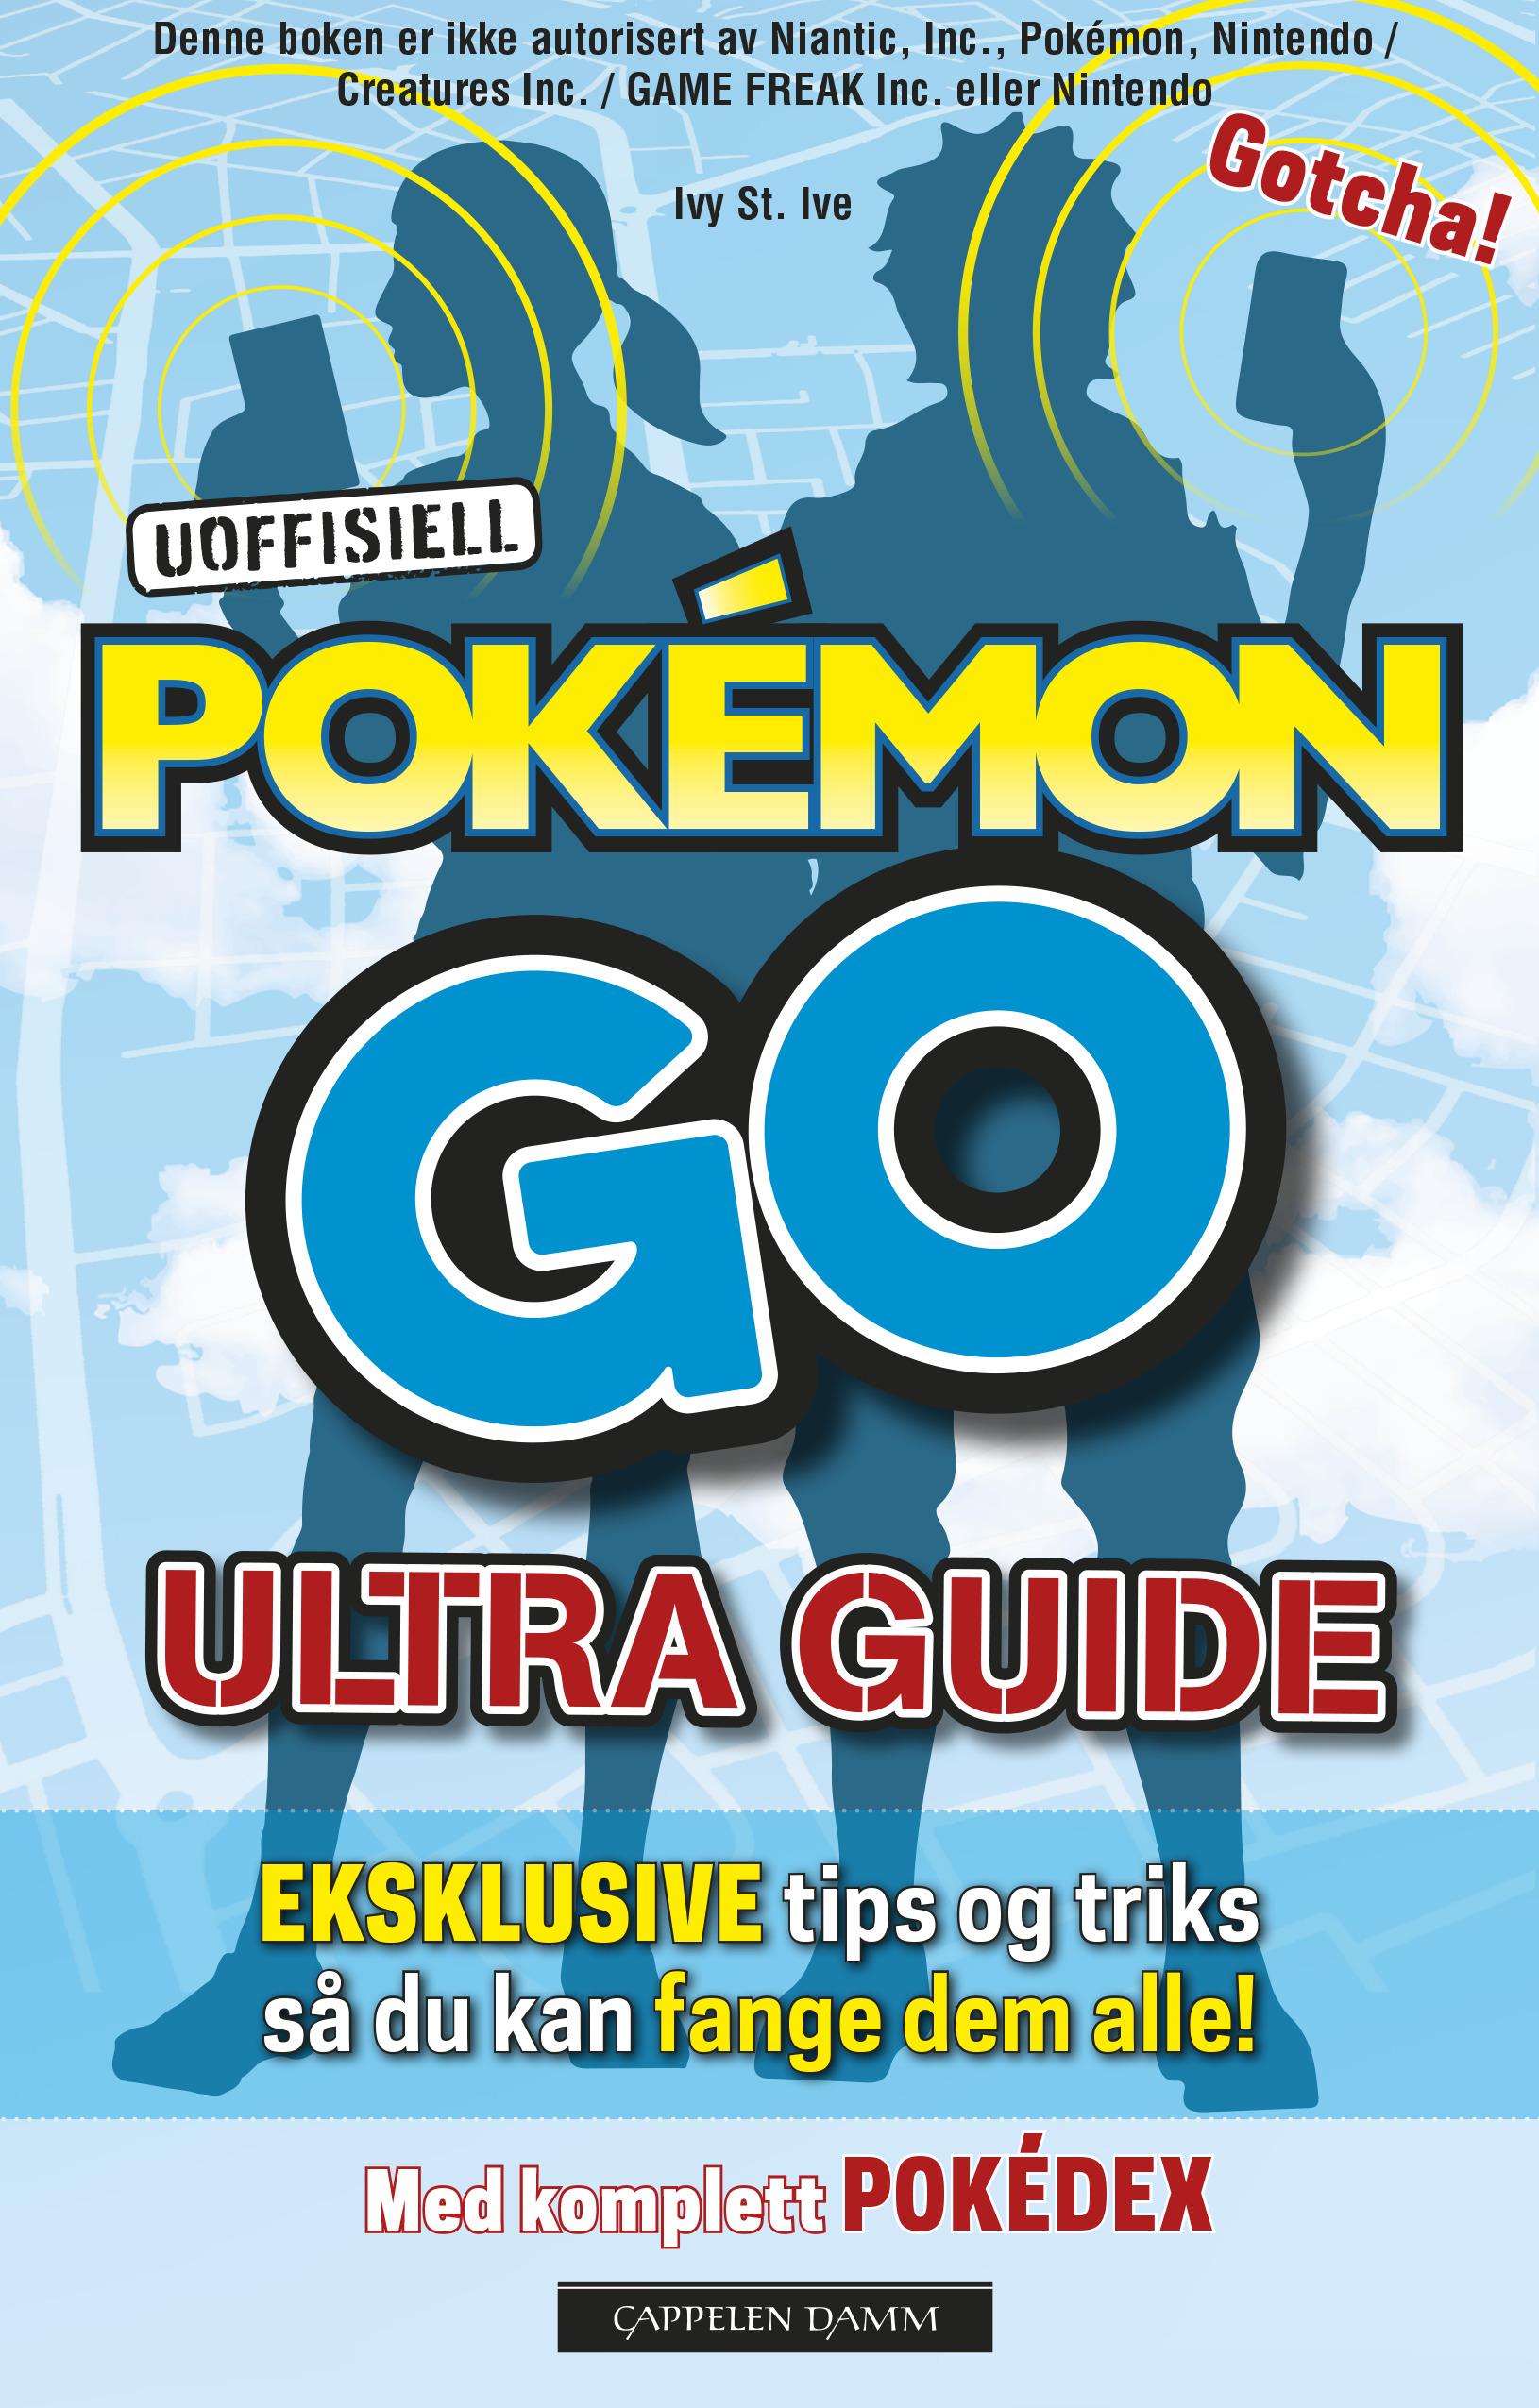 Uoffisiell Pokémon Go ultra guide